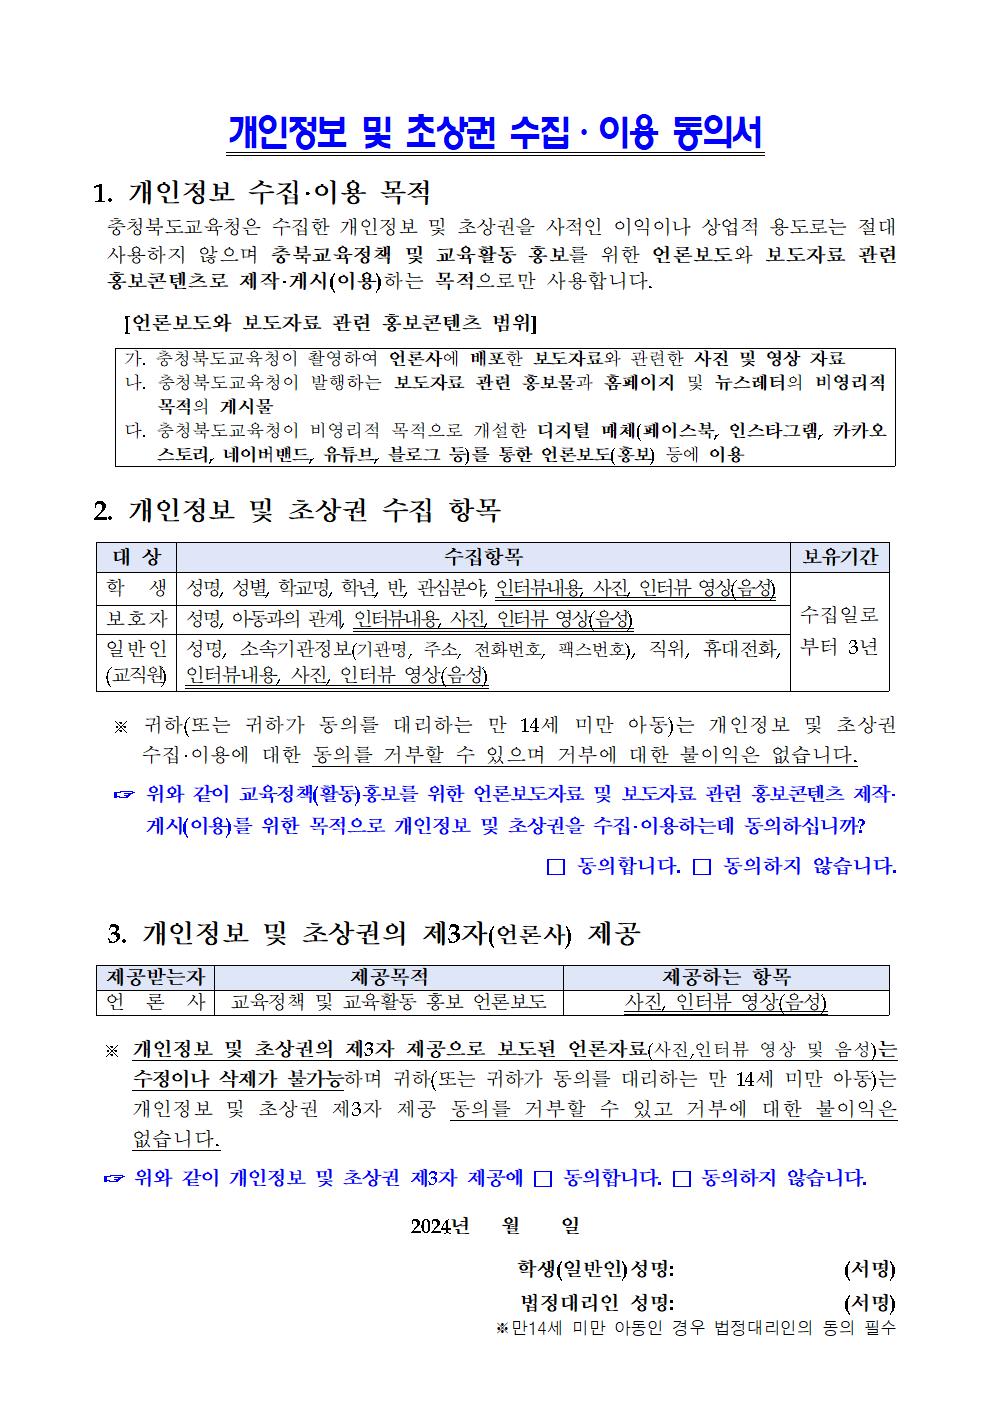 법제처 늘봄학교 재능기부 수업 참가 신청 안내 가정통신문002